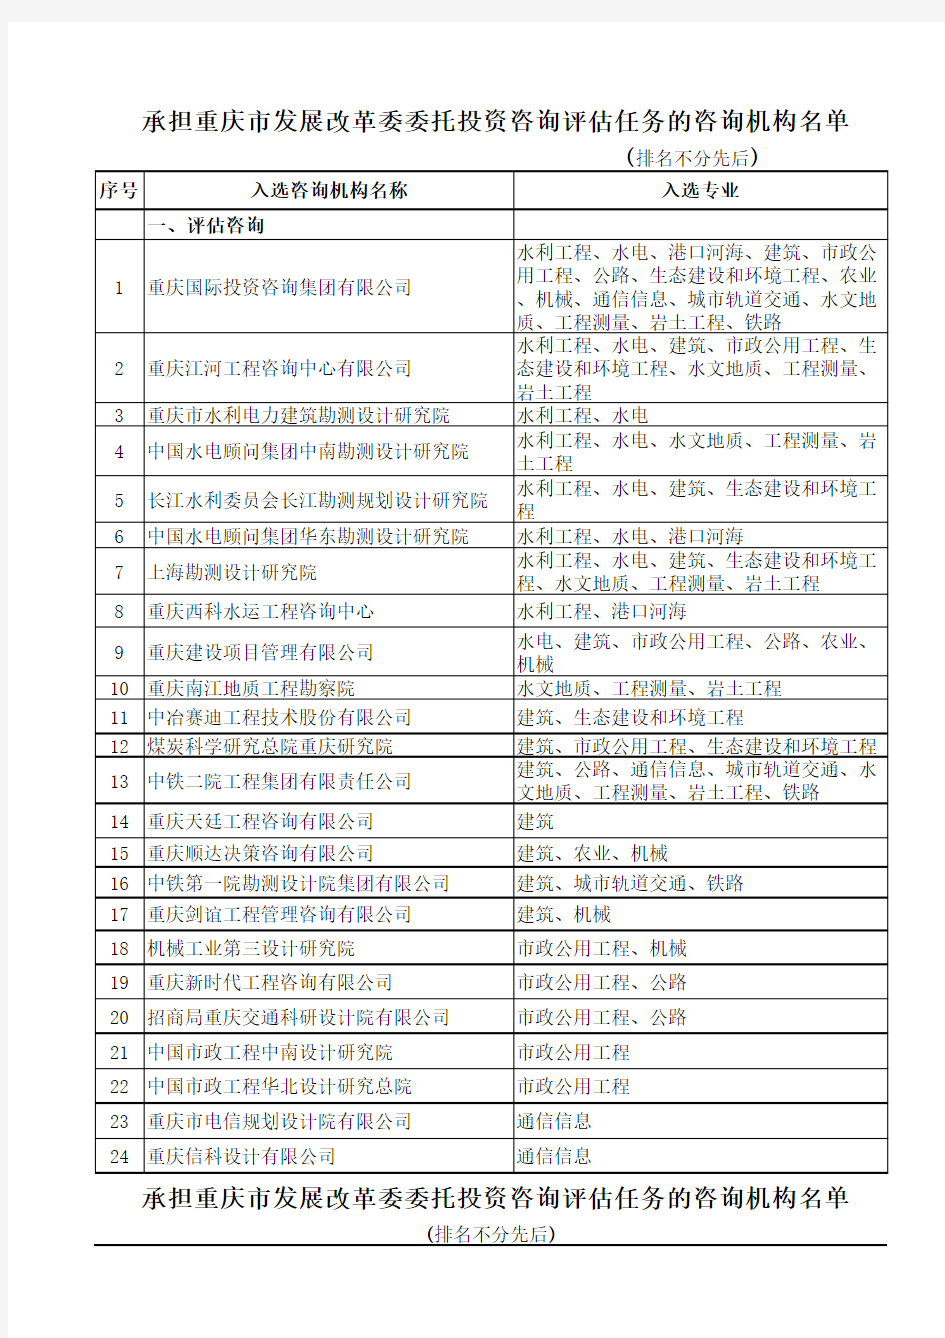 承担重庆市发展改革委委托投资咨询评估任务的咨询机构名单95号附件